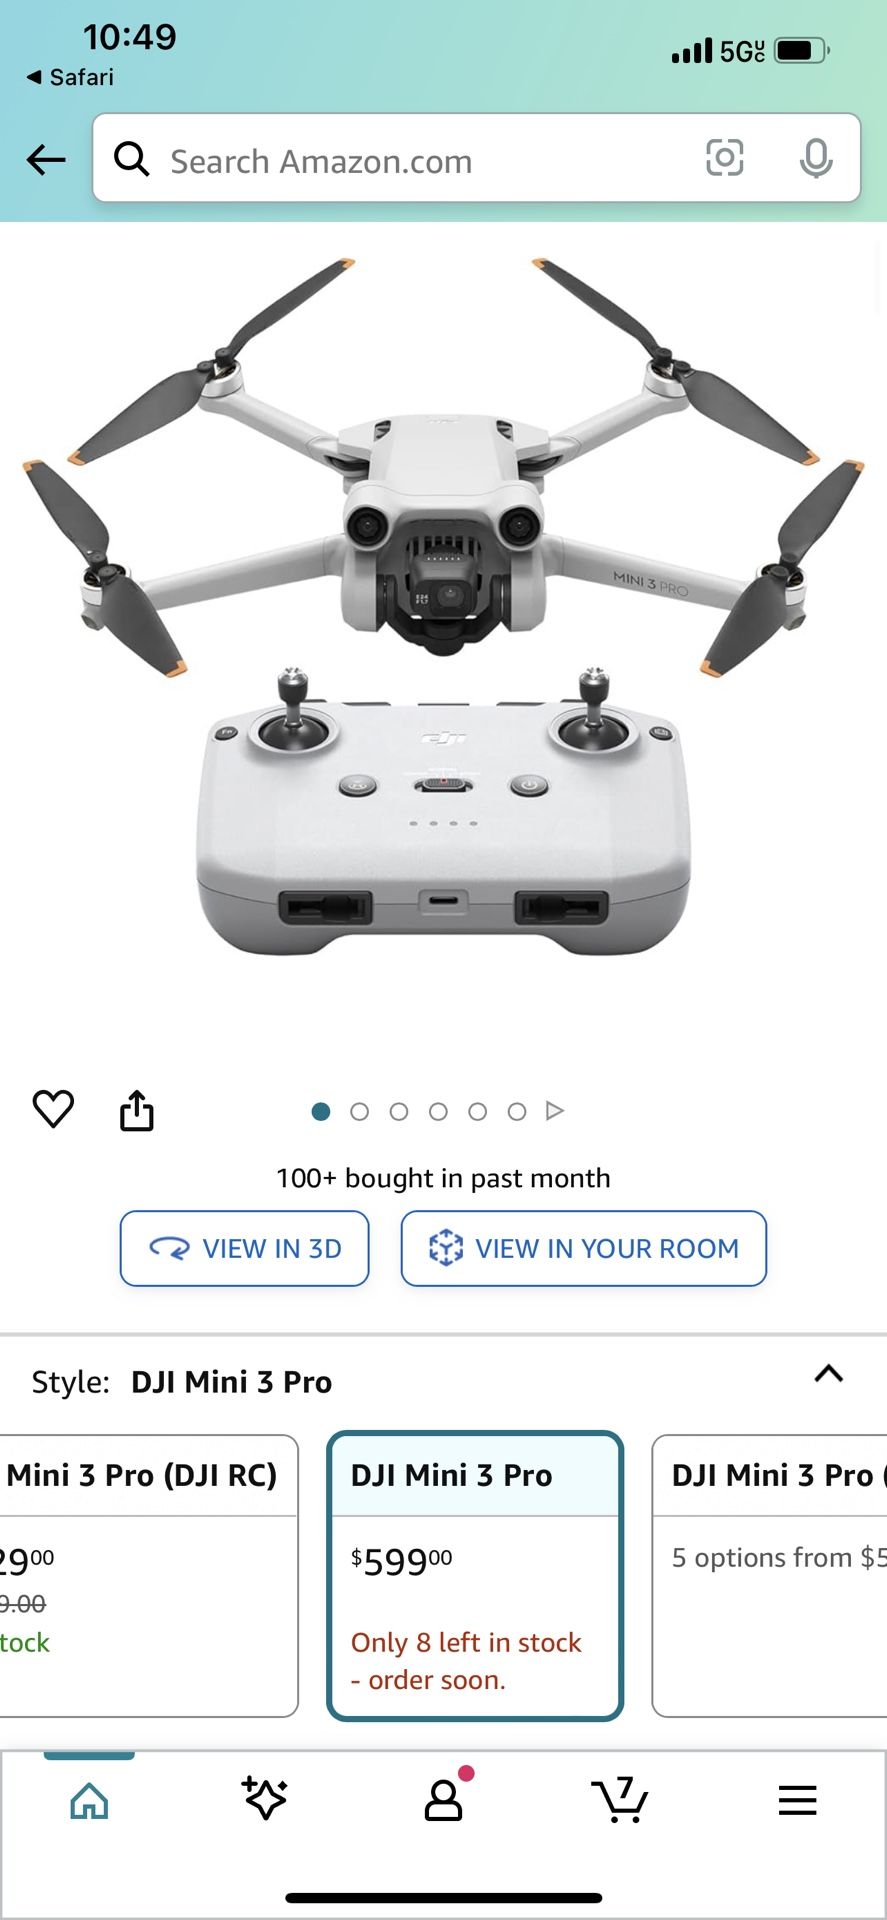 DJI Mini 3 Pro (DJI RC), Mini Drone with 4K Video